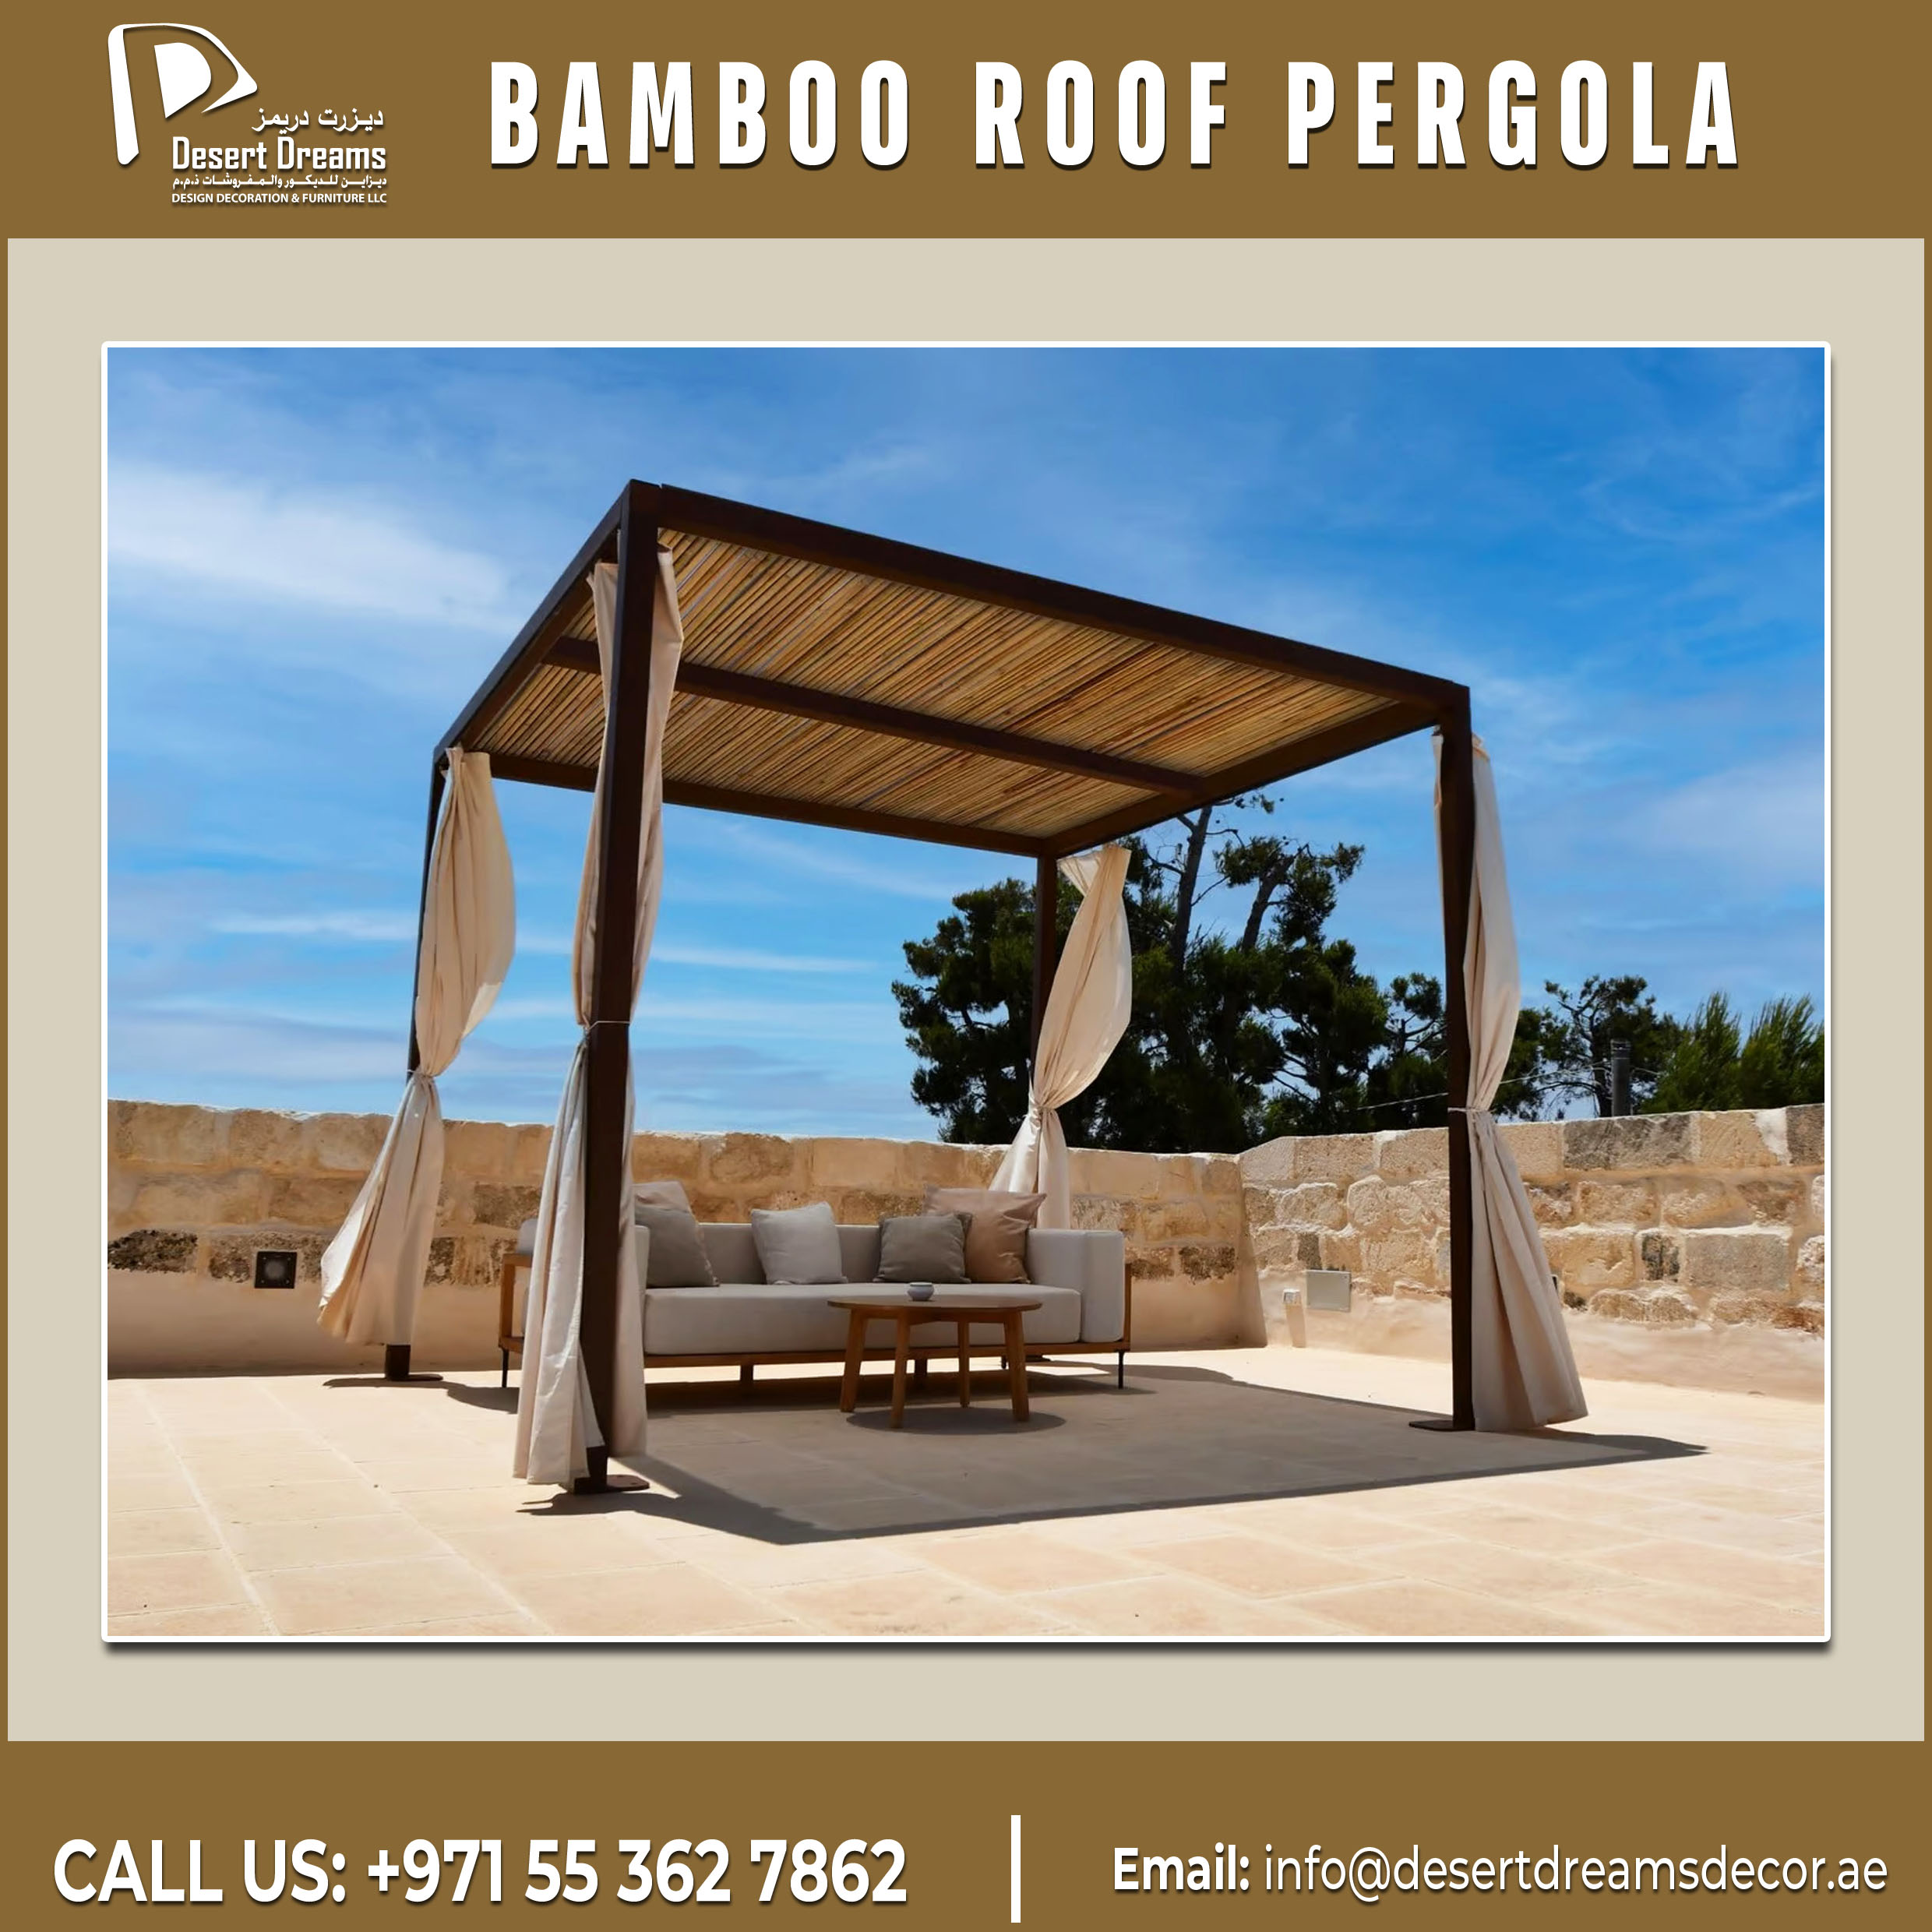 Bamboo Roofing Pergola in Dubai | Aluminum and Wooden Pergola.